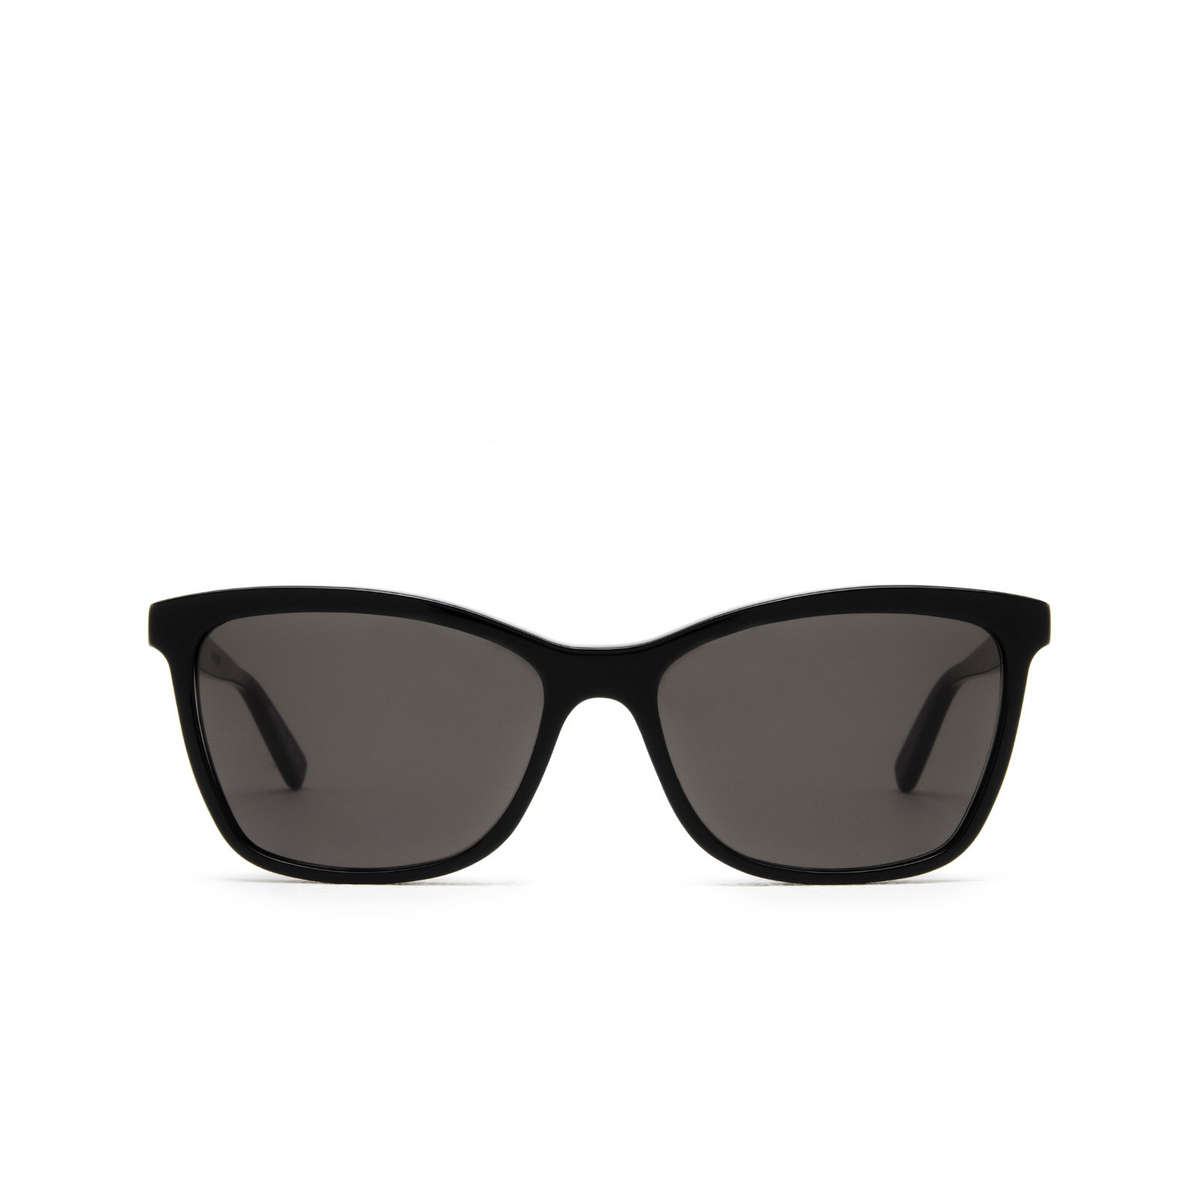 Saint Laurent SL 502 Sunglasses 001 Black - front view